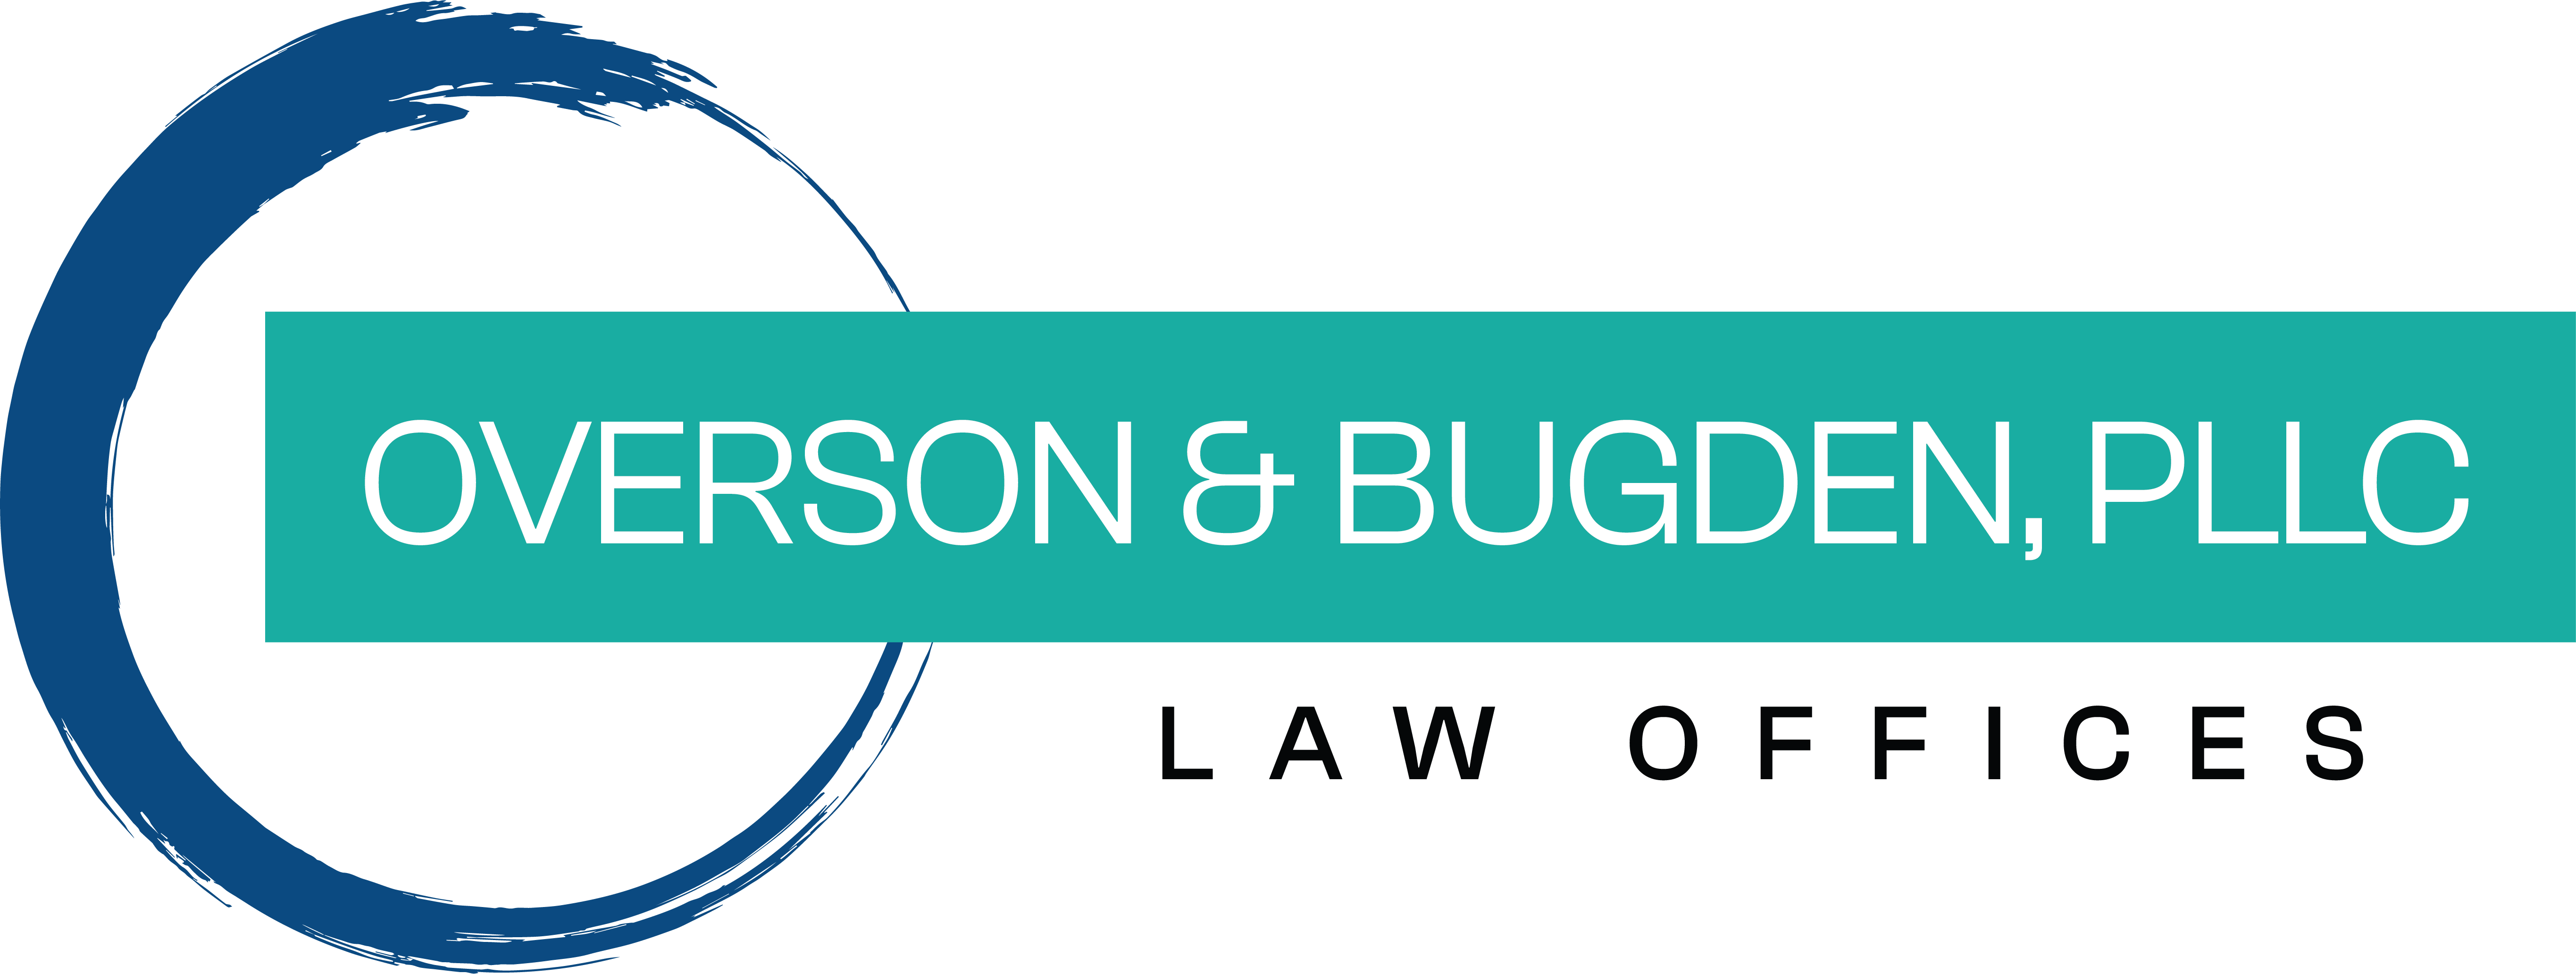 Overson & Bugden PLLC logo